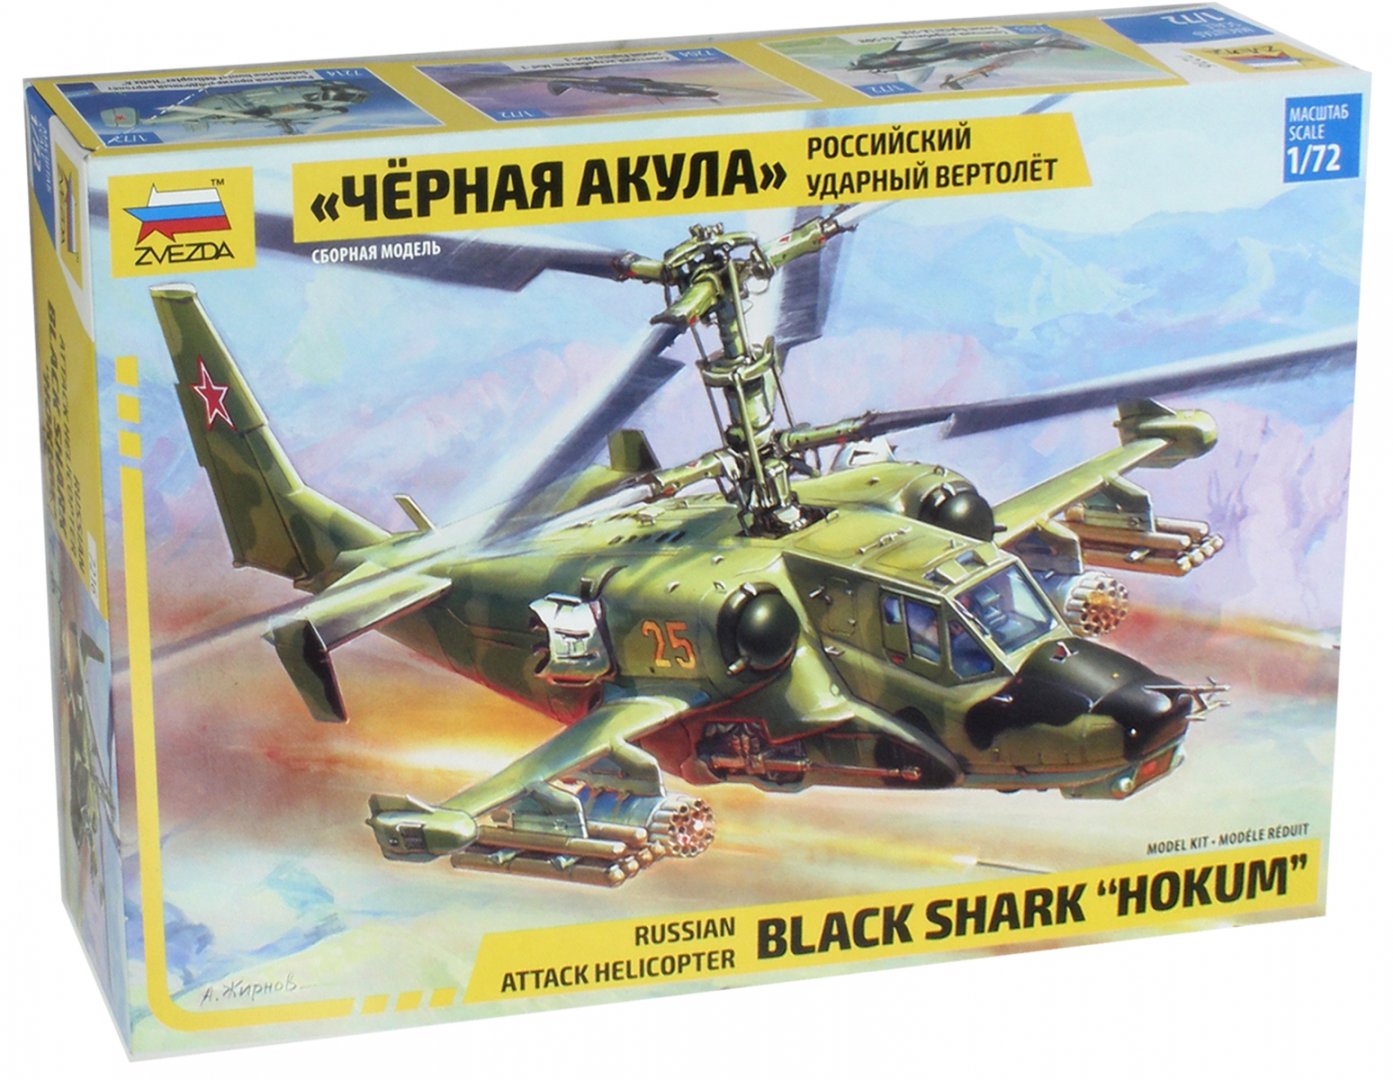 Иллюстрация 1 из 2 для Российский боевой вертолет Ка-50 "Черная акула" (7216) | Лабиринт - игрушки. Источник: Лабиринт